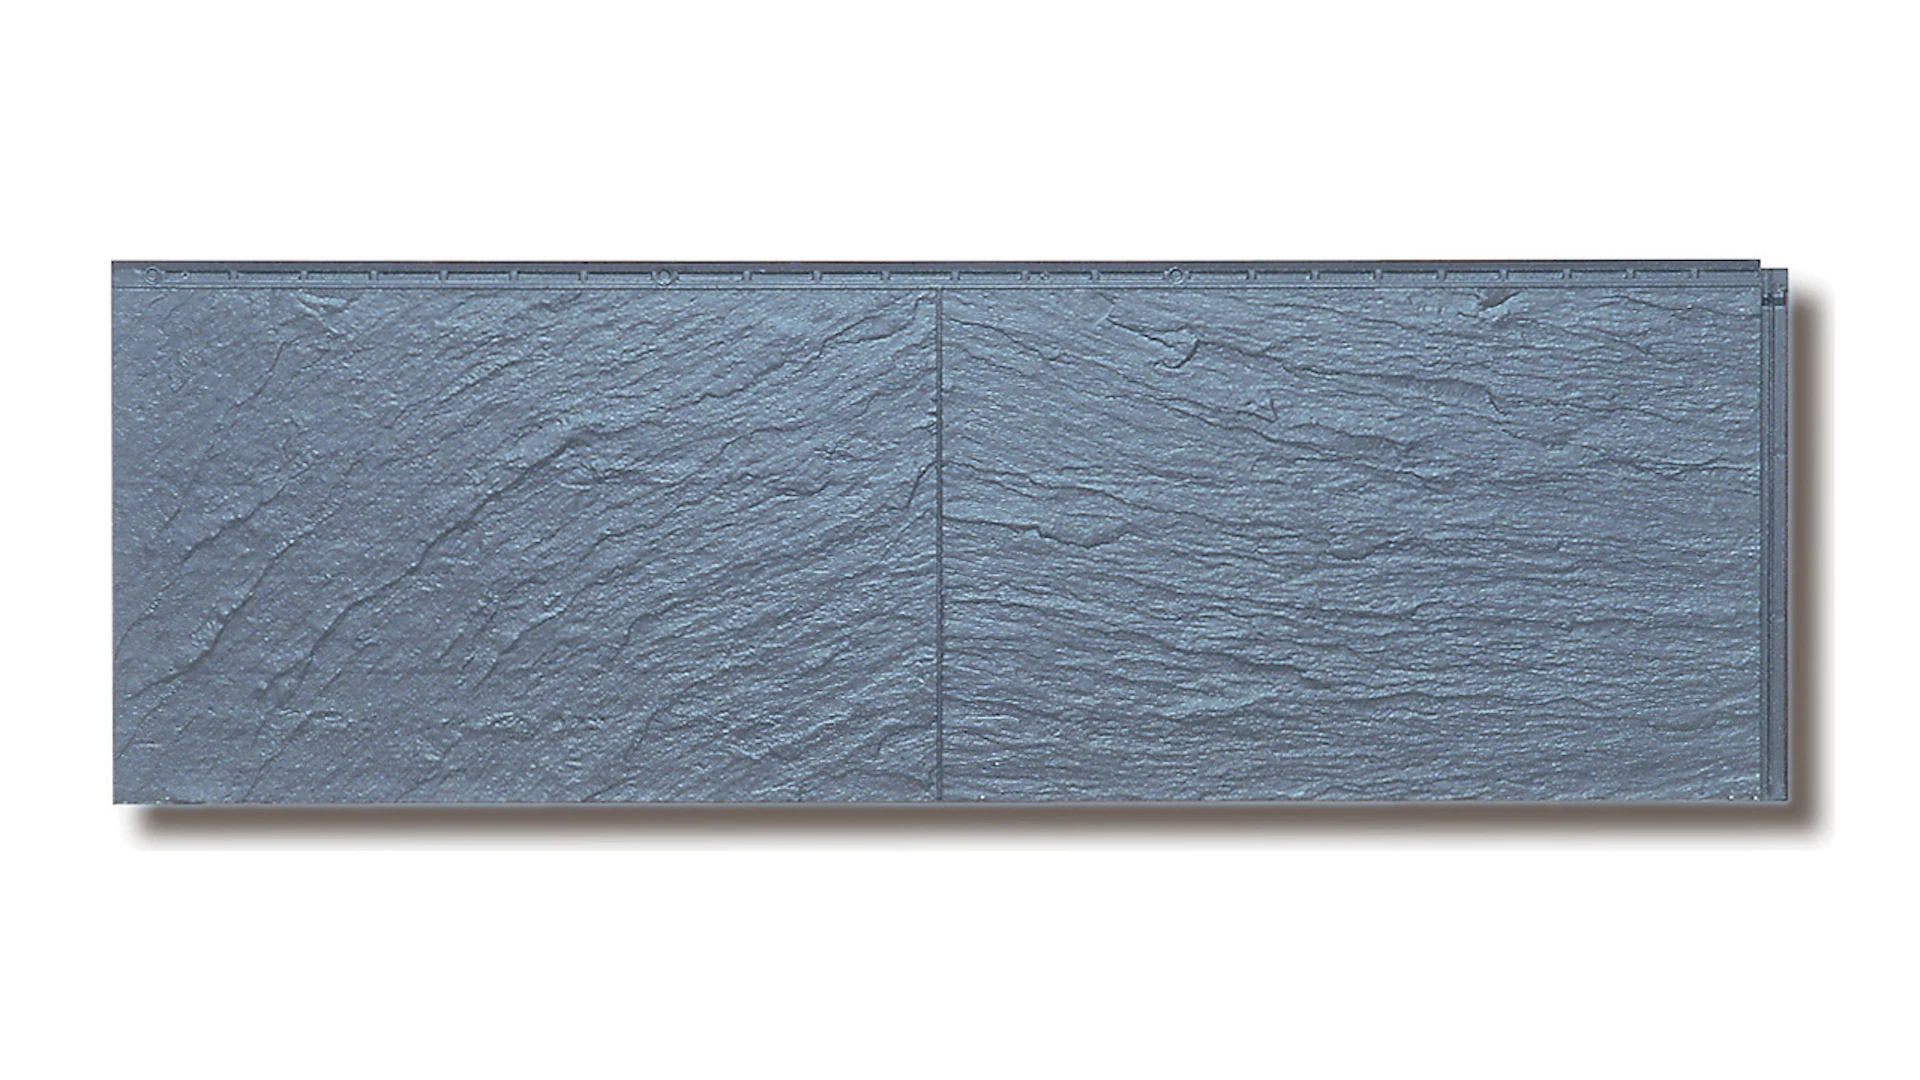 Zierer Fassadenplatte Schieferoptik SS1 - 1115 x 359 mm anthrazit aus GFK